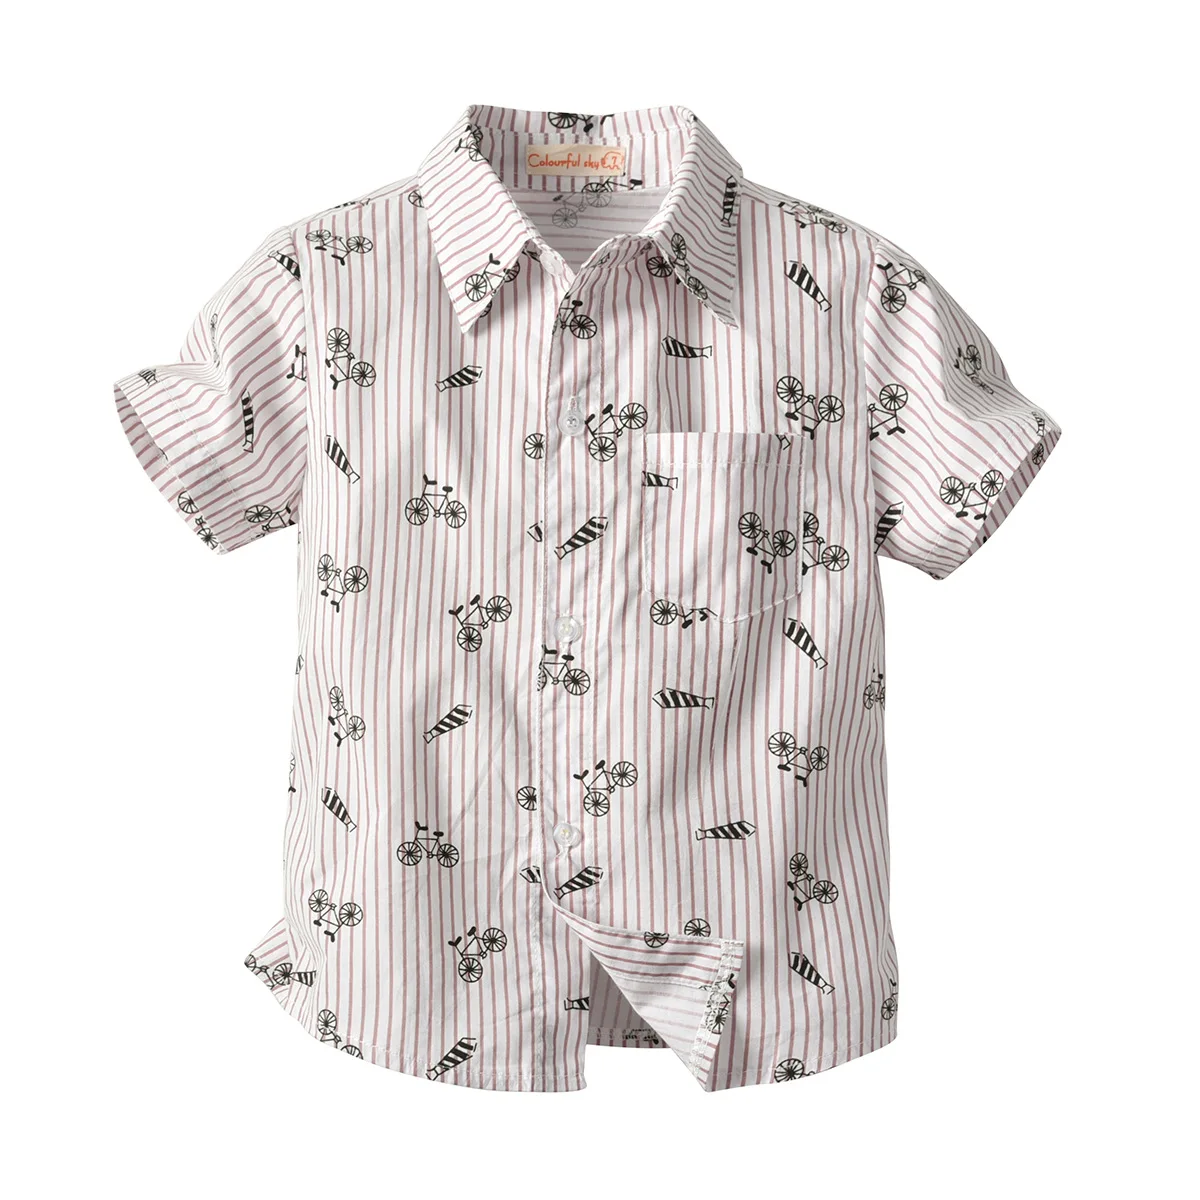 Стиль, модный Детский кардиган, летняя рубашка в полоску с принтом велосипеда для мальчиков, Детская рубашка джентльмена для кормления